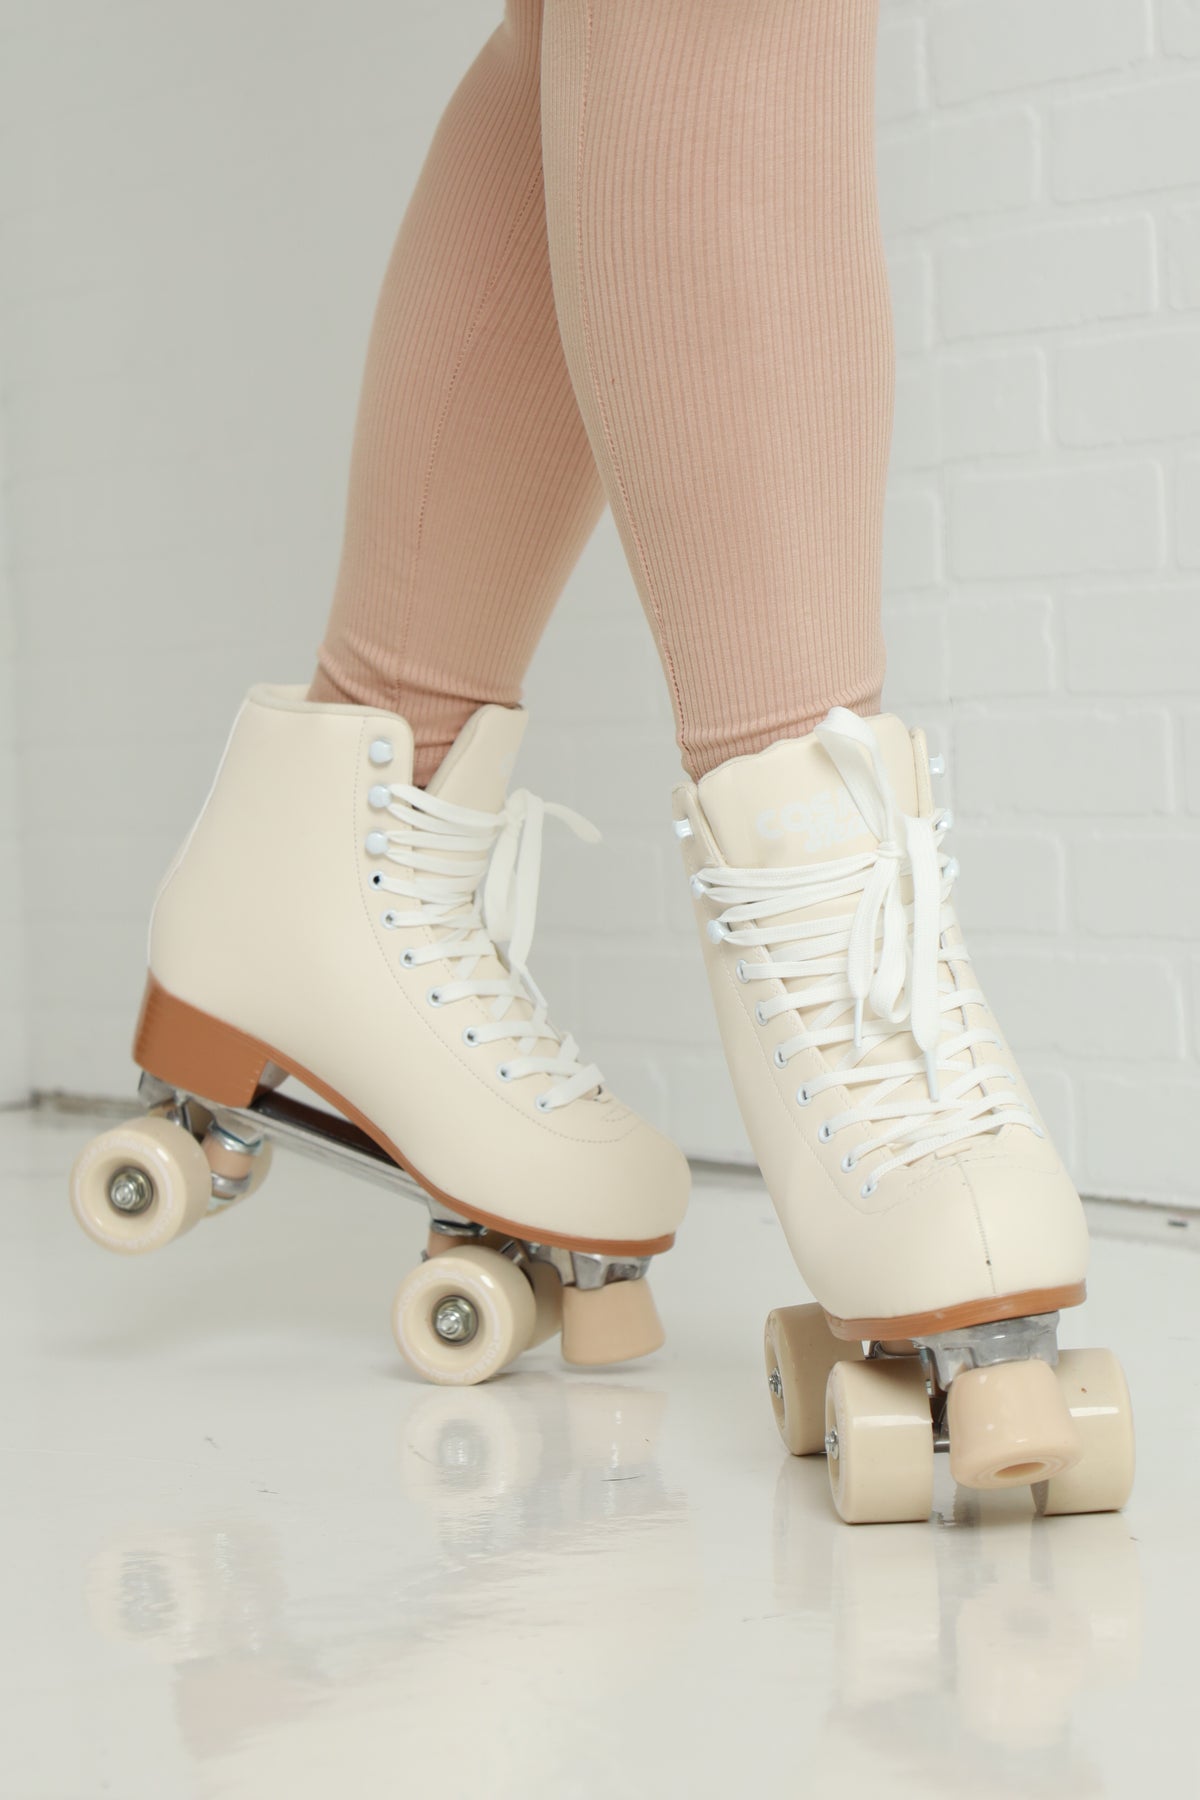 
              Skater Girl Pastel Roller Skates - Butter - Swank A Posh
            